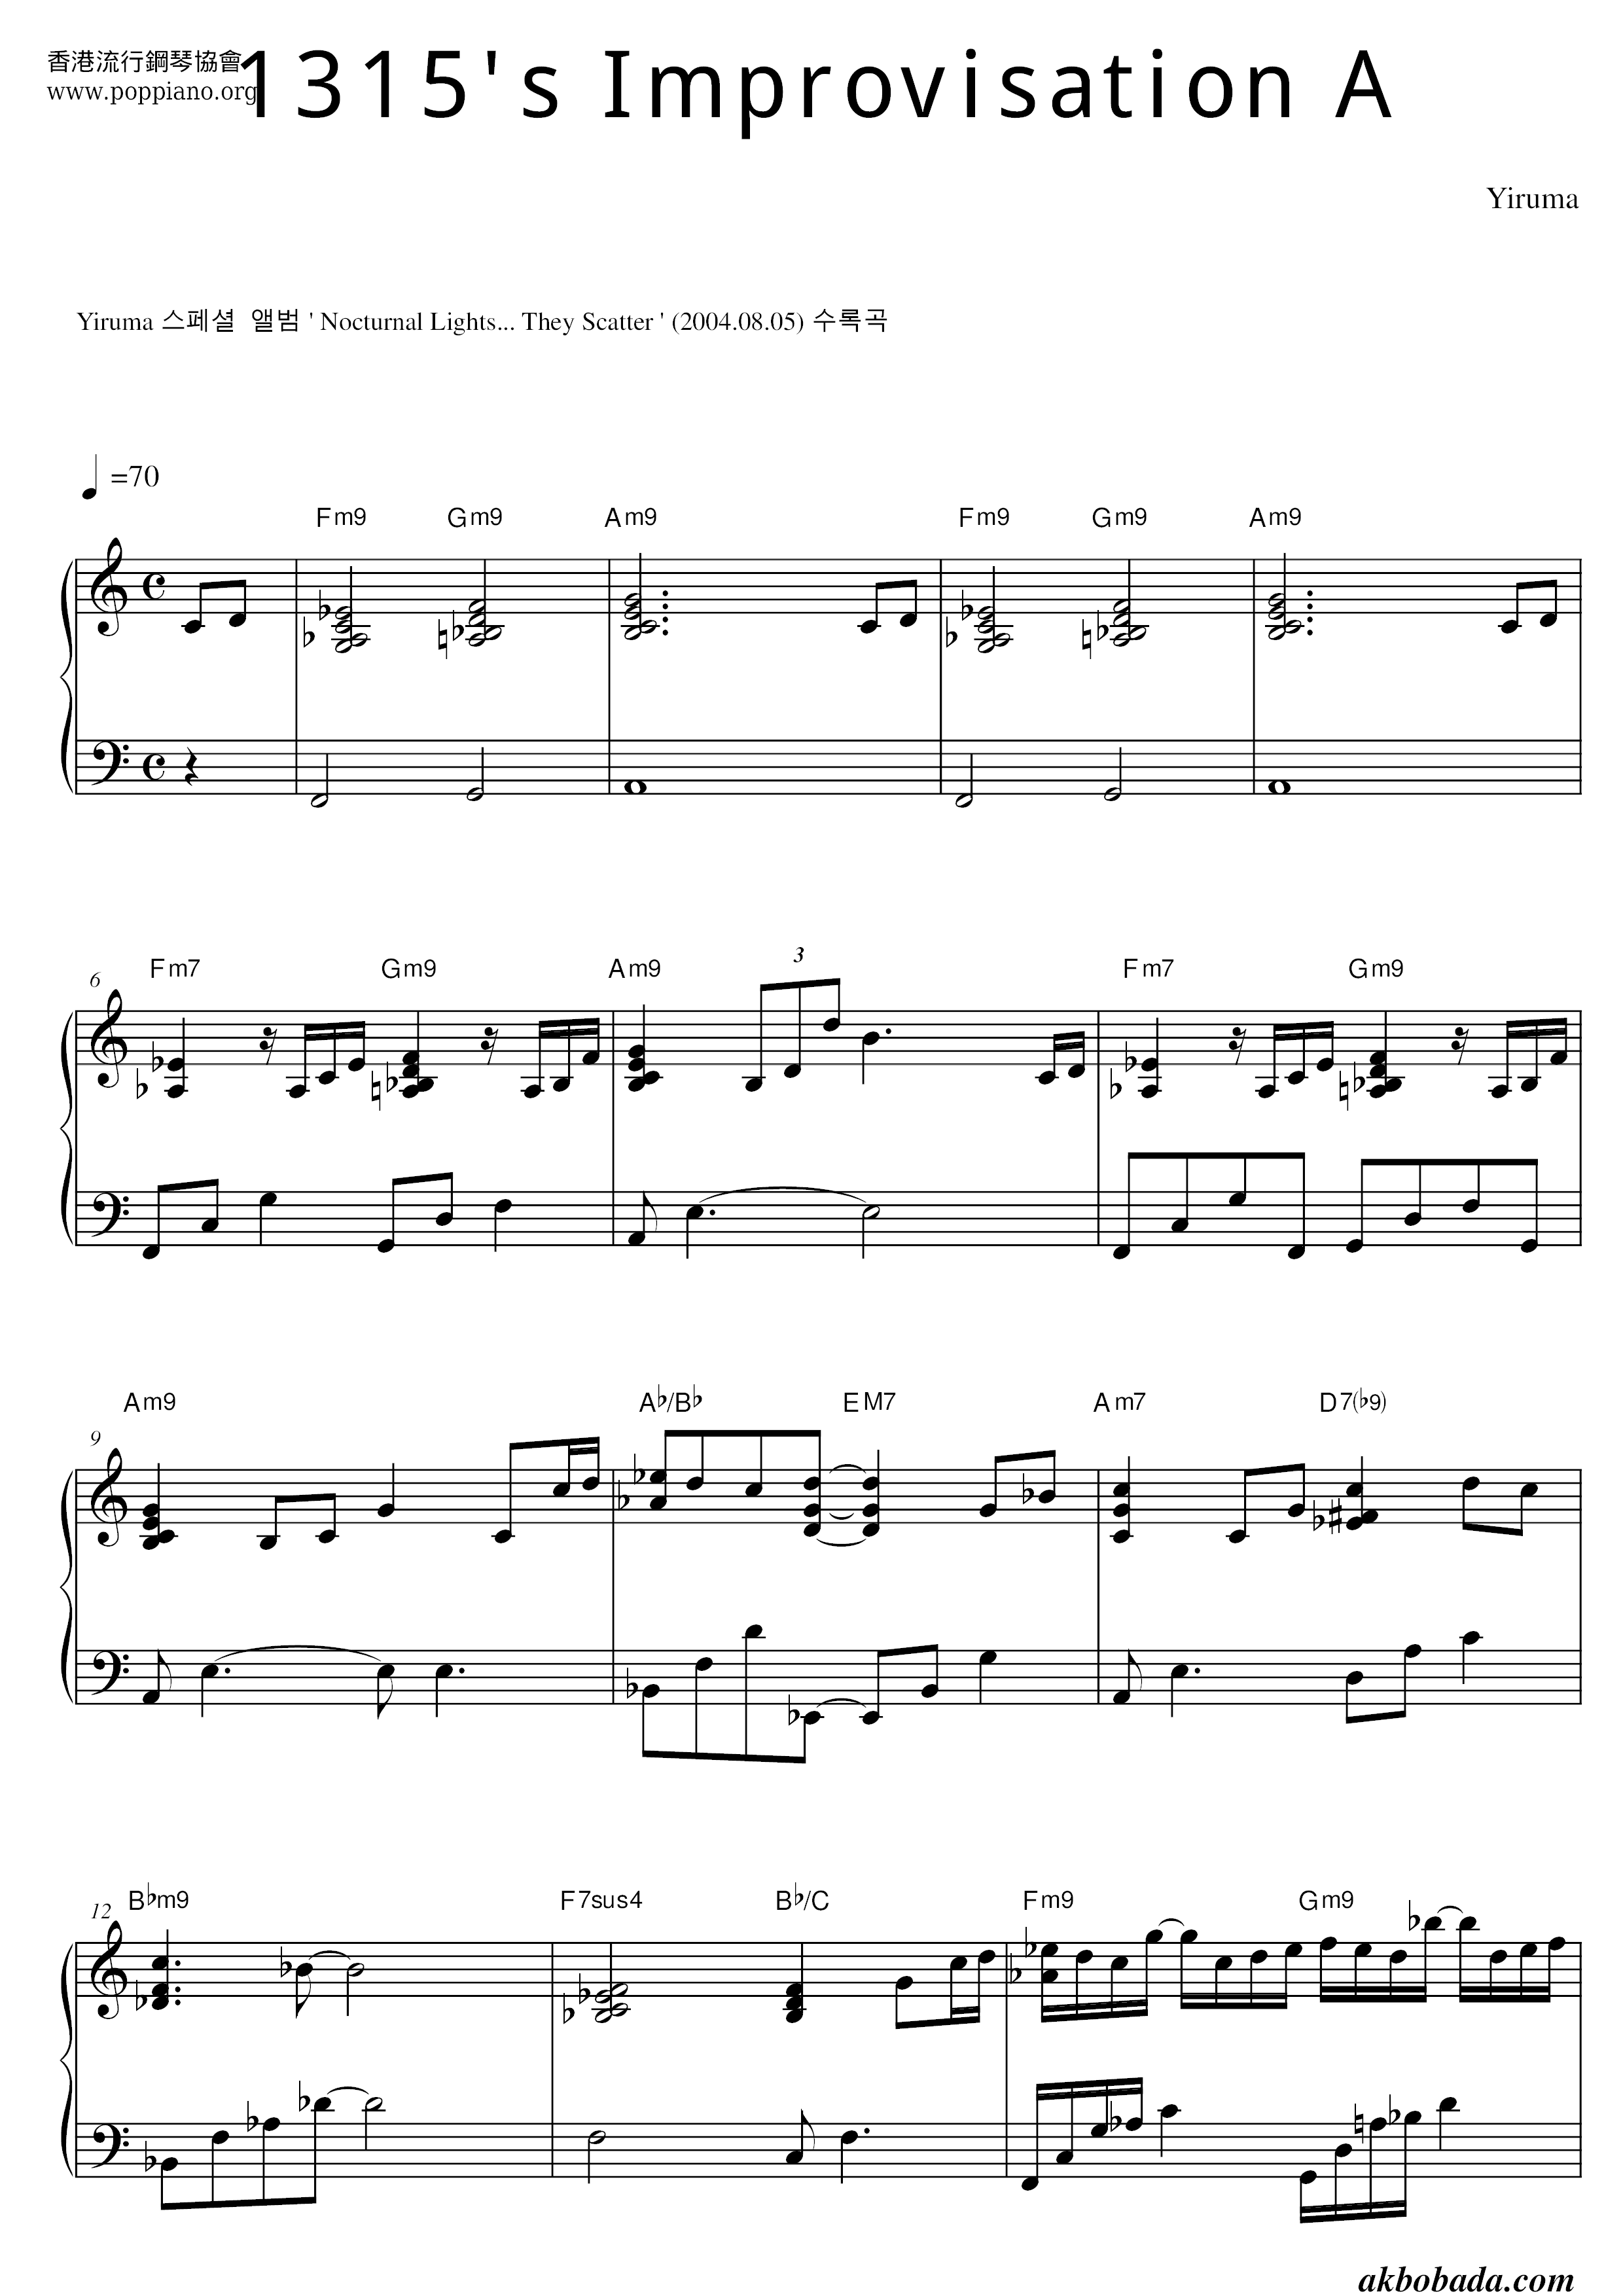 1315's Improvisation A琴谱